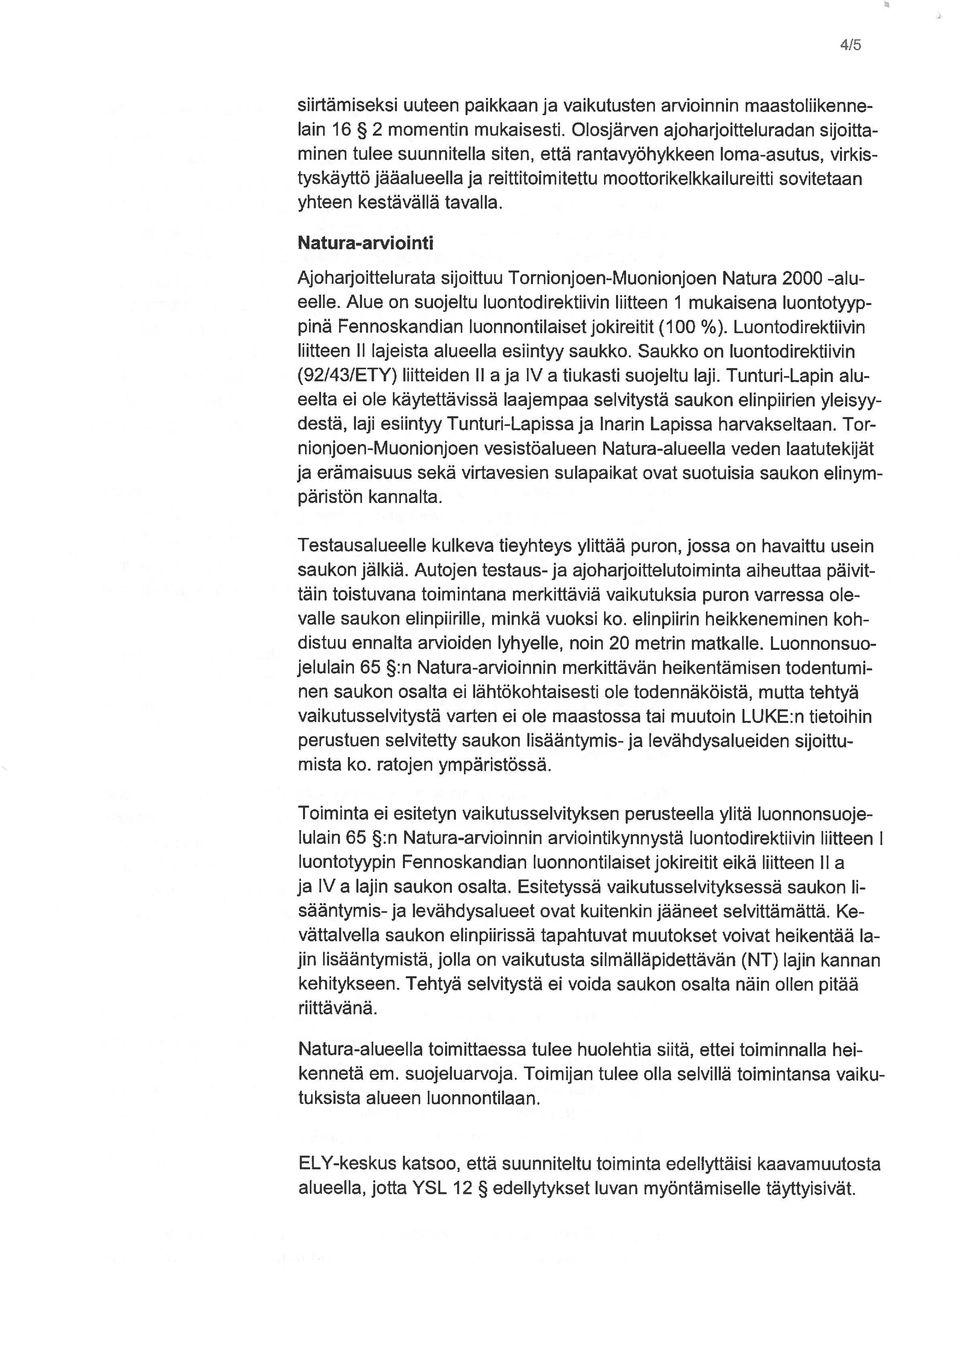 kestävällä tavalla. Natura-arviointi Ajoharjoittelurata sijoittuu Tornionjoen-Muonionjoen Natura 2000 -alu eelle.